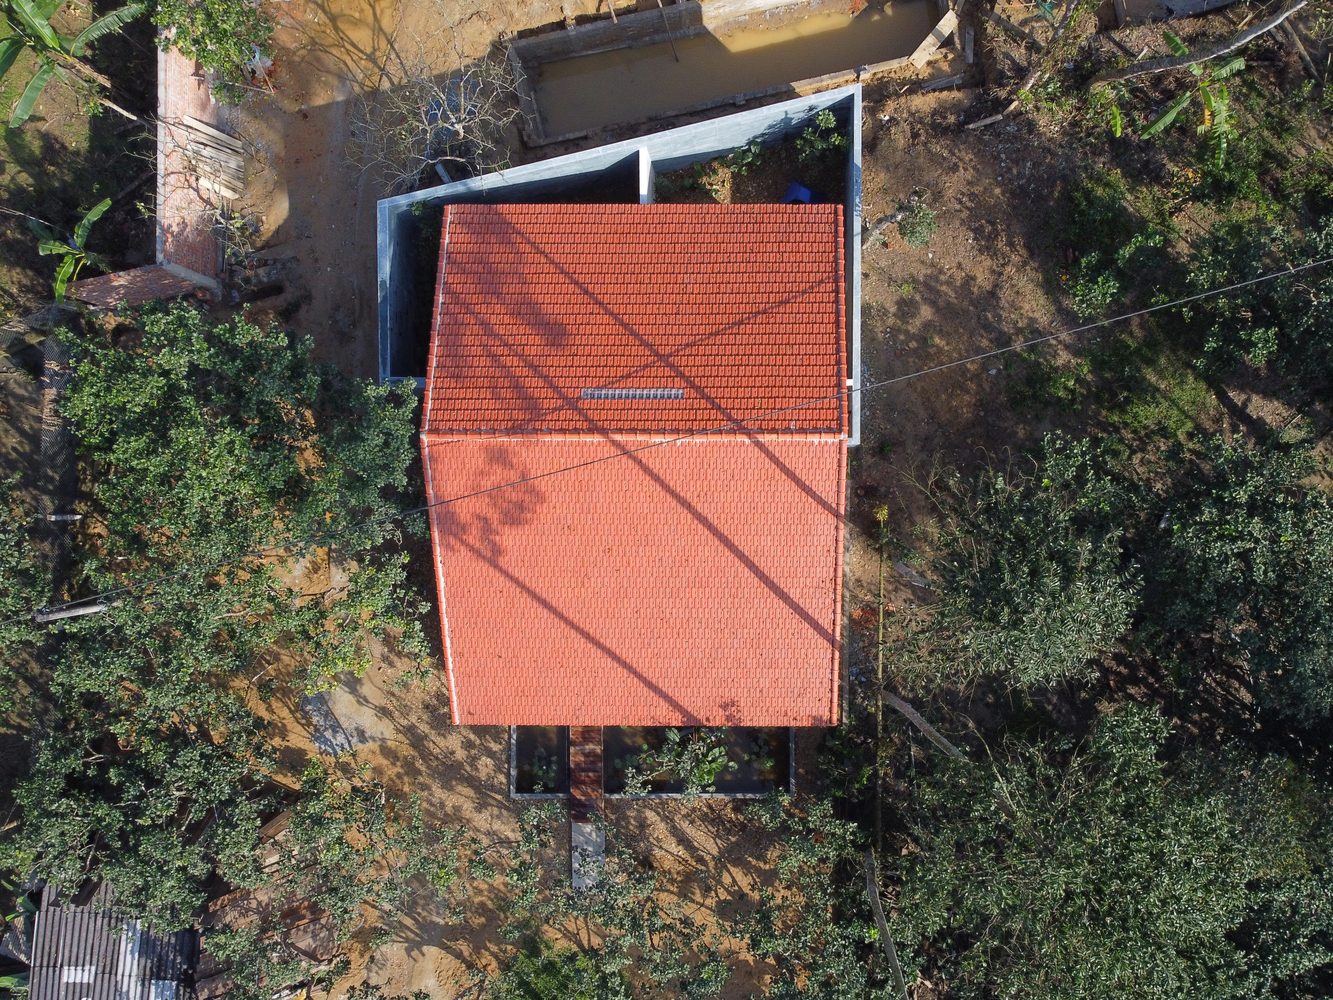 Ngôi nhà nhìn từ trên cao, với mái ngói đỏ ấm áp nổi bật giữa sắc xanh thiên nhiên.